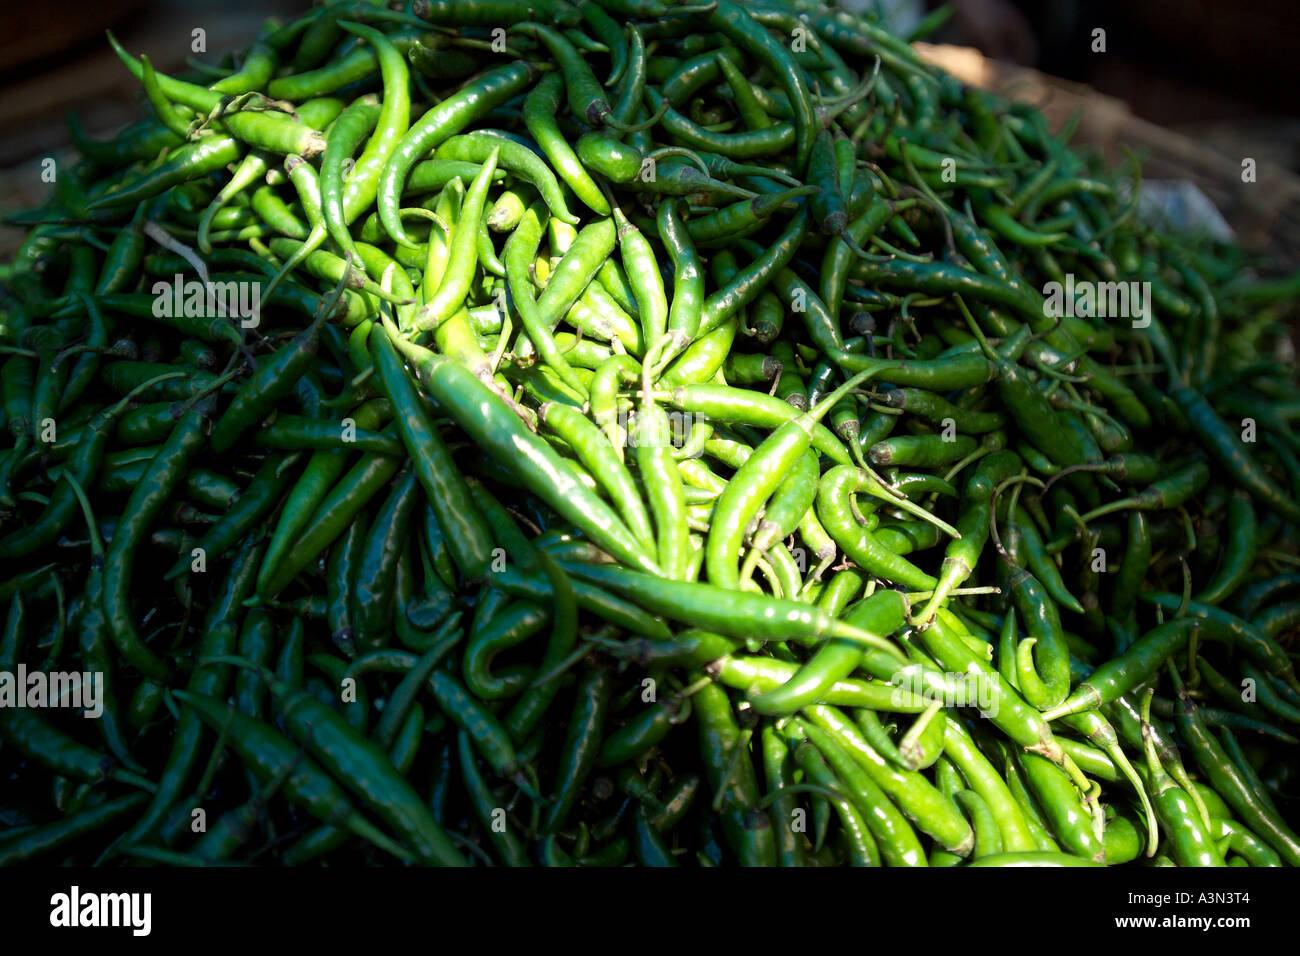 Piments verts frais, fruits et légumes du marché Devaraja, Mysore, Inde Banque D'Images